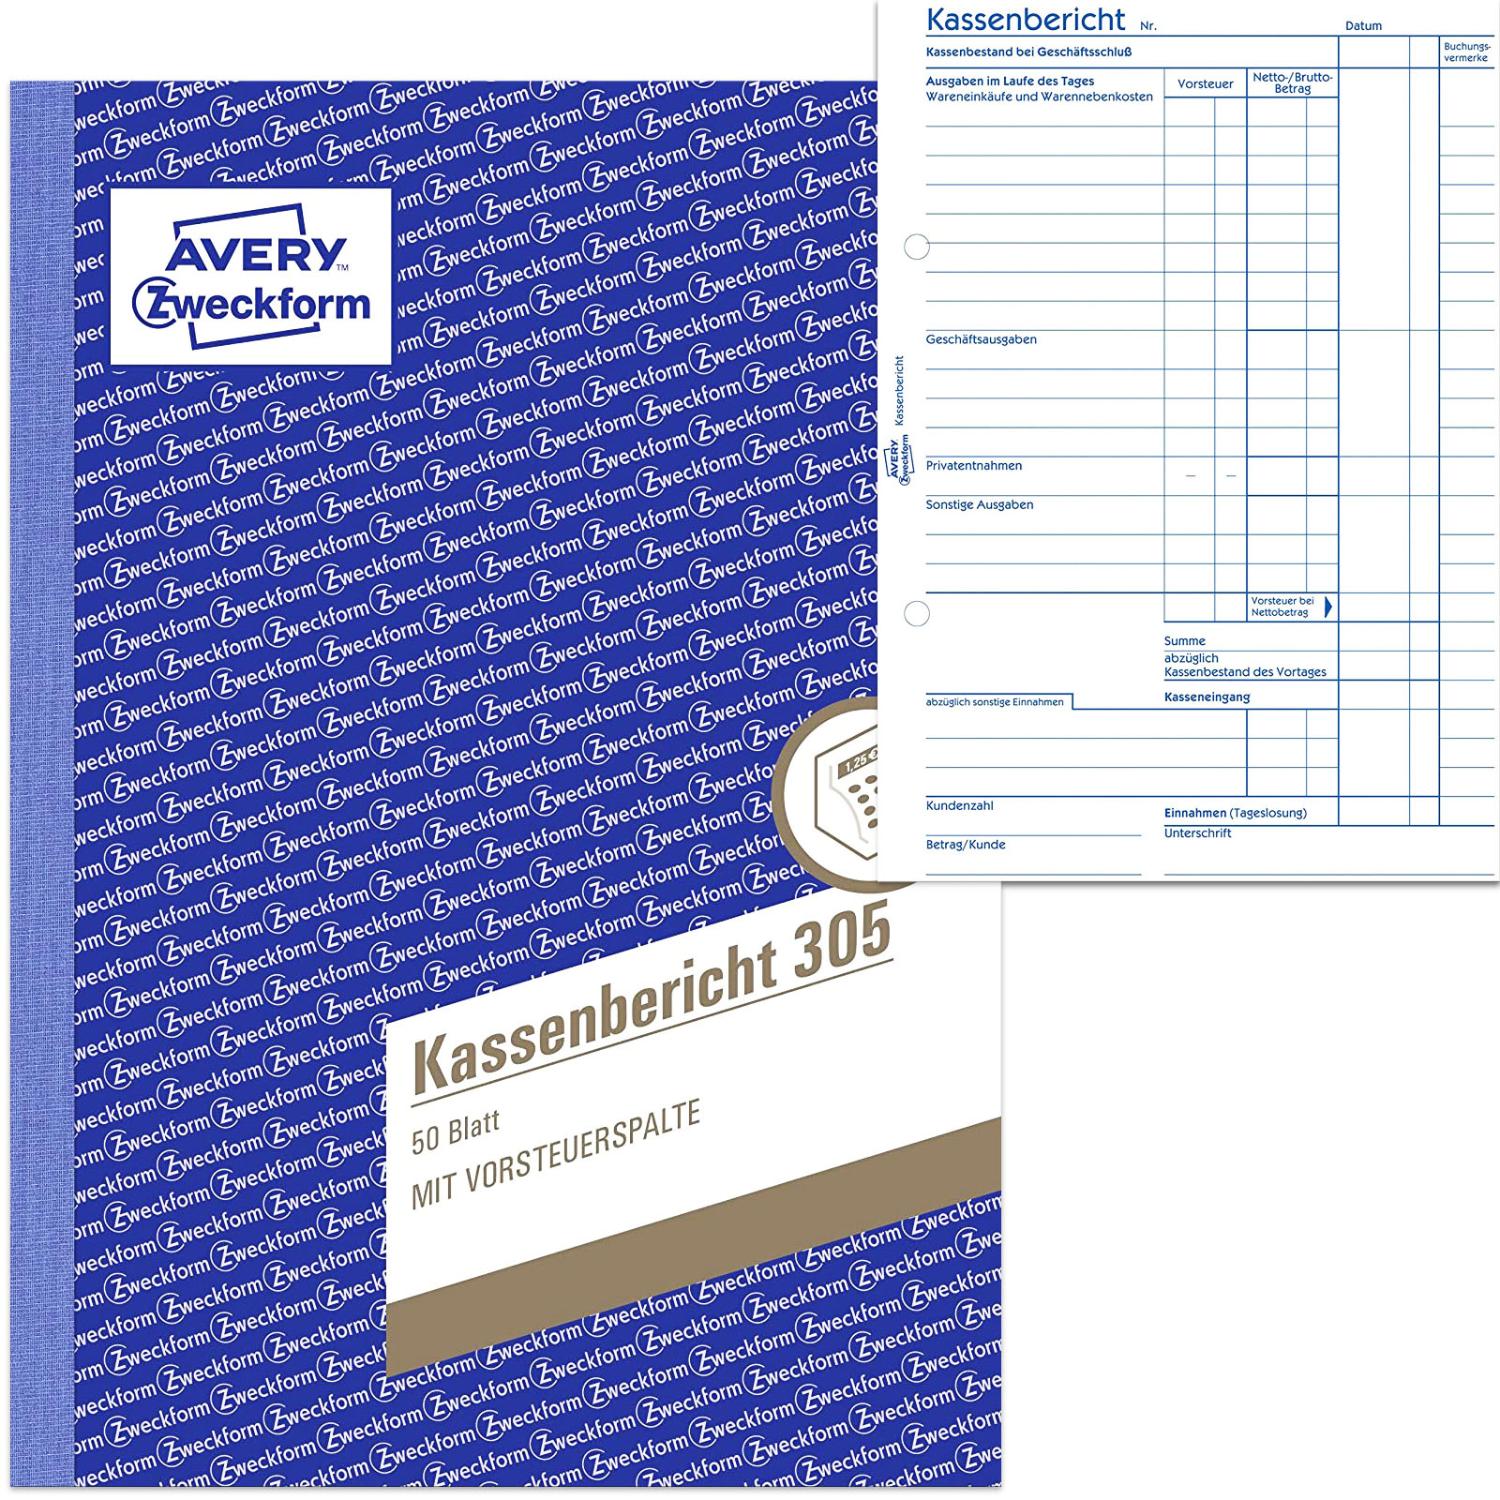 AVERY Zweckform Formularbuch Kassenbericht, A5, 50 Blatt